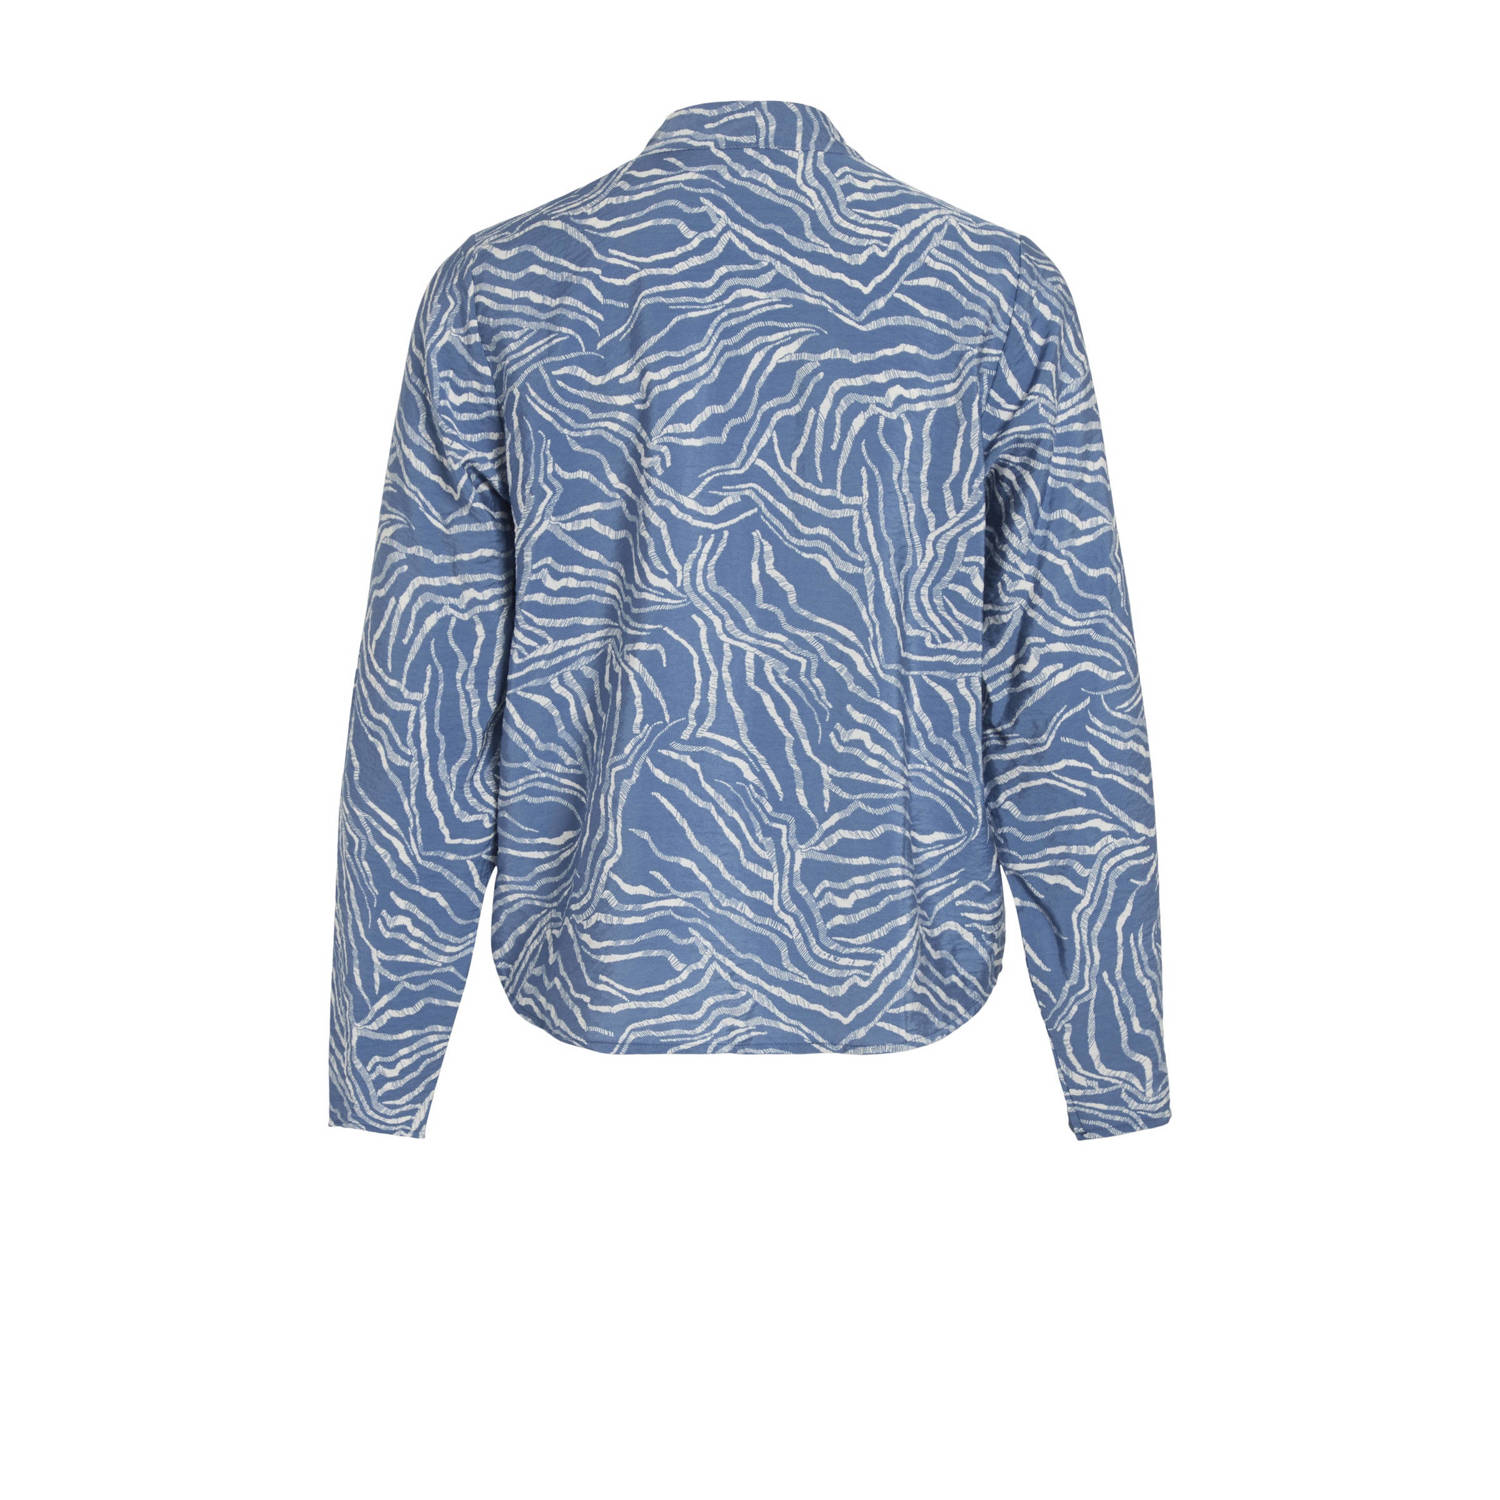 VILA blouse met all over print blauw ecru